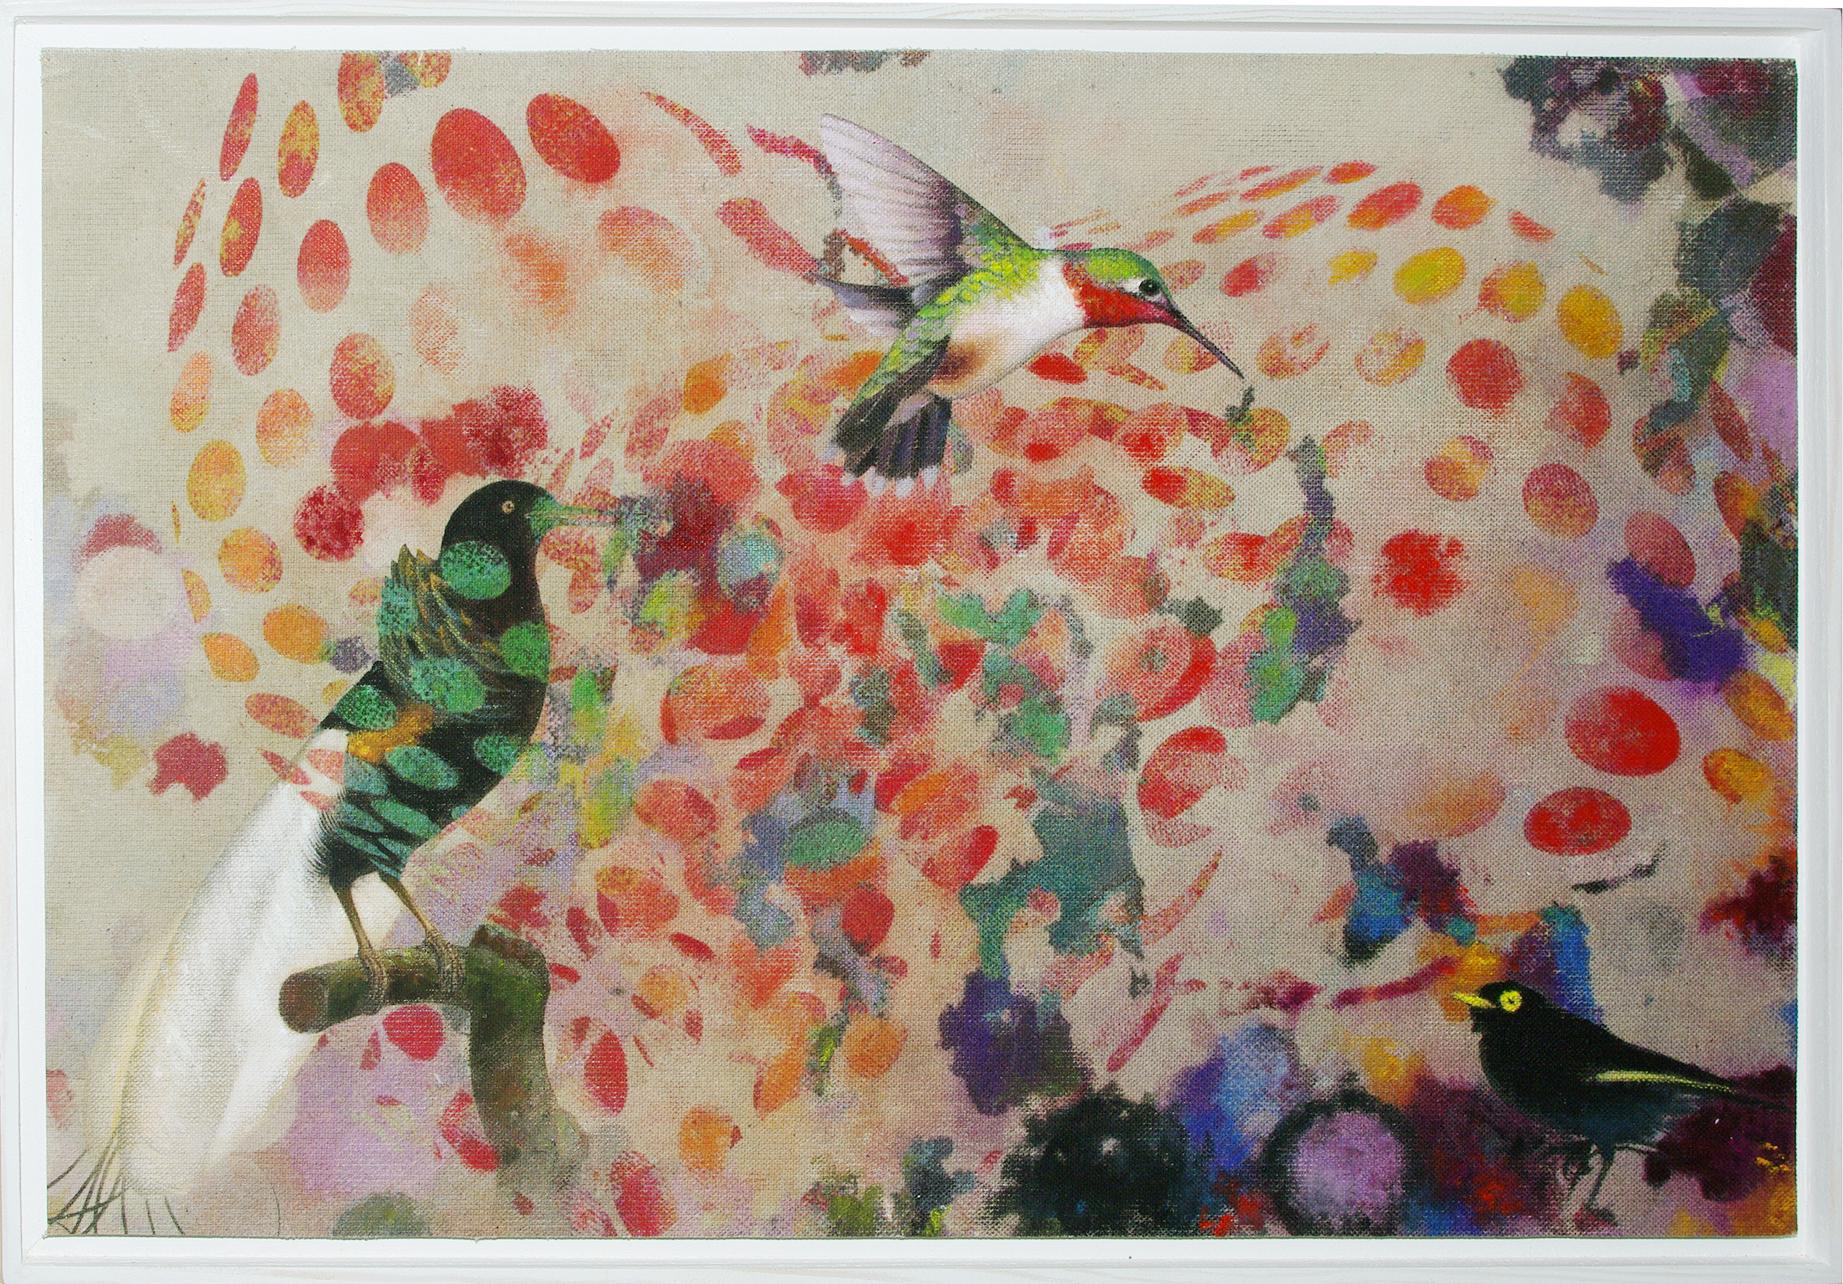 Birds 019 - Mixed Media, Contemporary, Animals, Painting, Acrylic , Abstract - Mixed Media Art by Francisco Nicolás